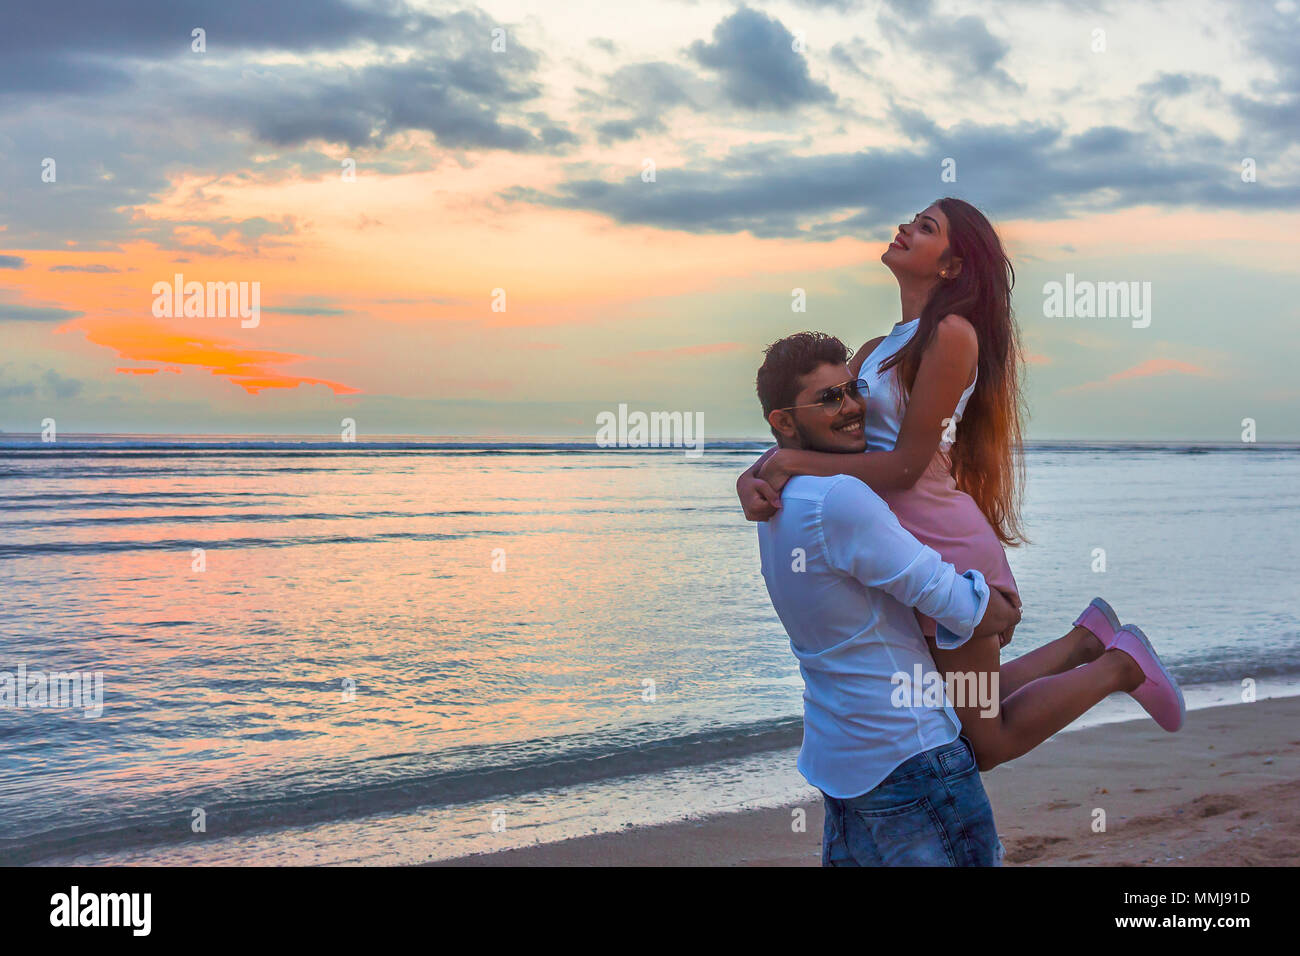 L'homme en soulevant sa petite amie sur la plage dans le soleil rouge Banque D'Images